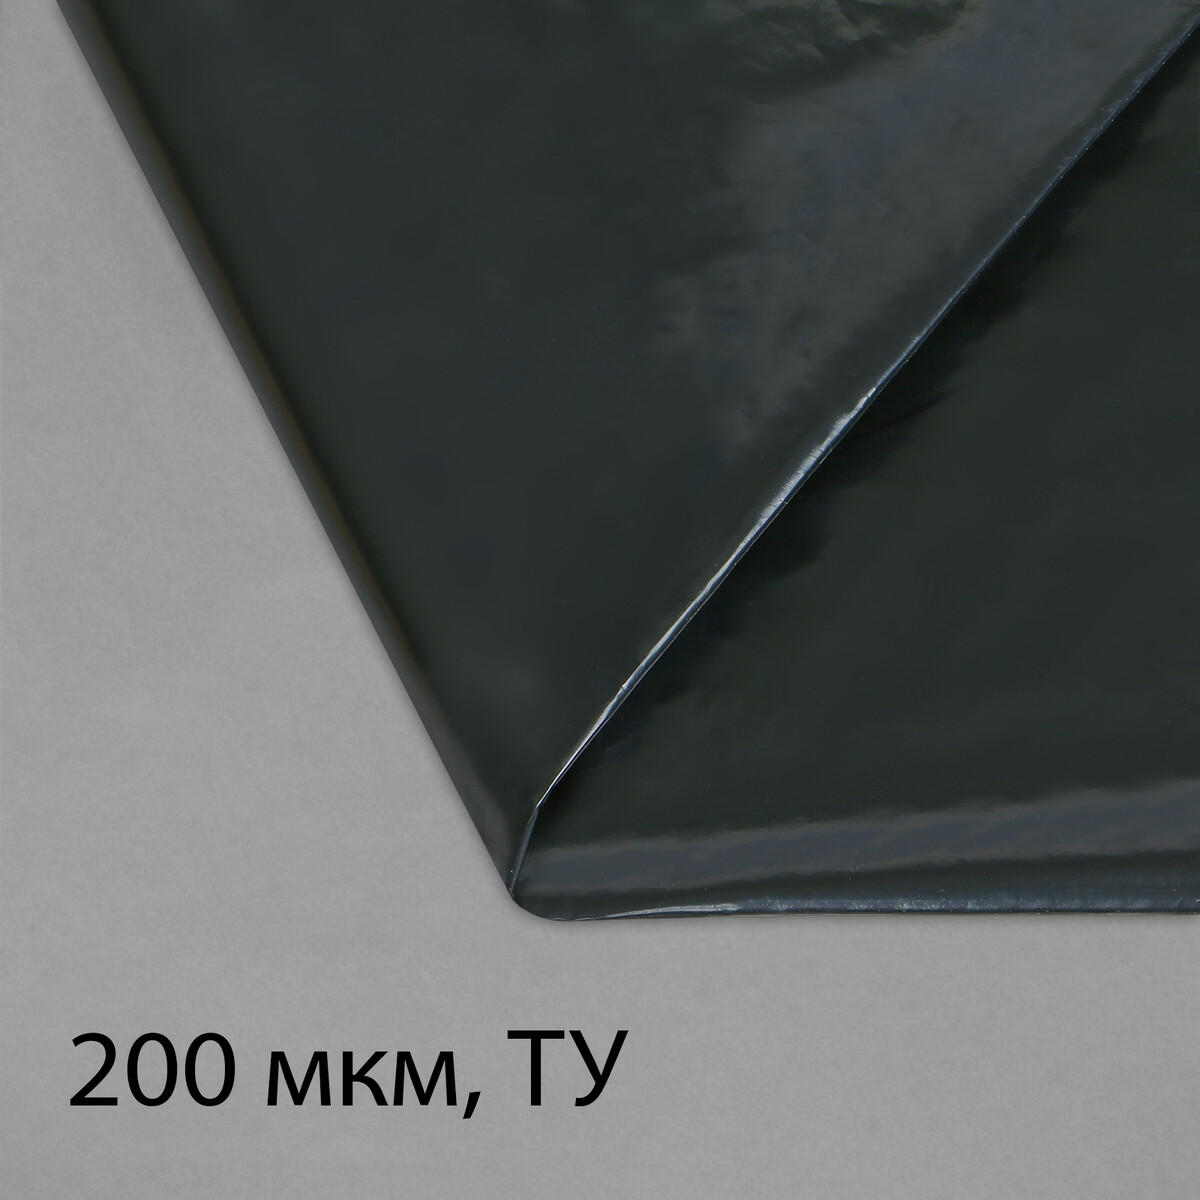 Пленка полиэтиленовая, техническая, толщина 200 мкм, 5 × 3 м, рукав (1,5 м × 2), черная, 2 сорт, эконом 50 % пленка полиэтиленовая техническая 80 мкм черная длина 10 м ширина 3 м рукав 1 5 м × 2 эконом 50%